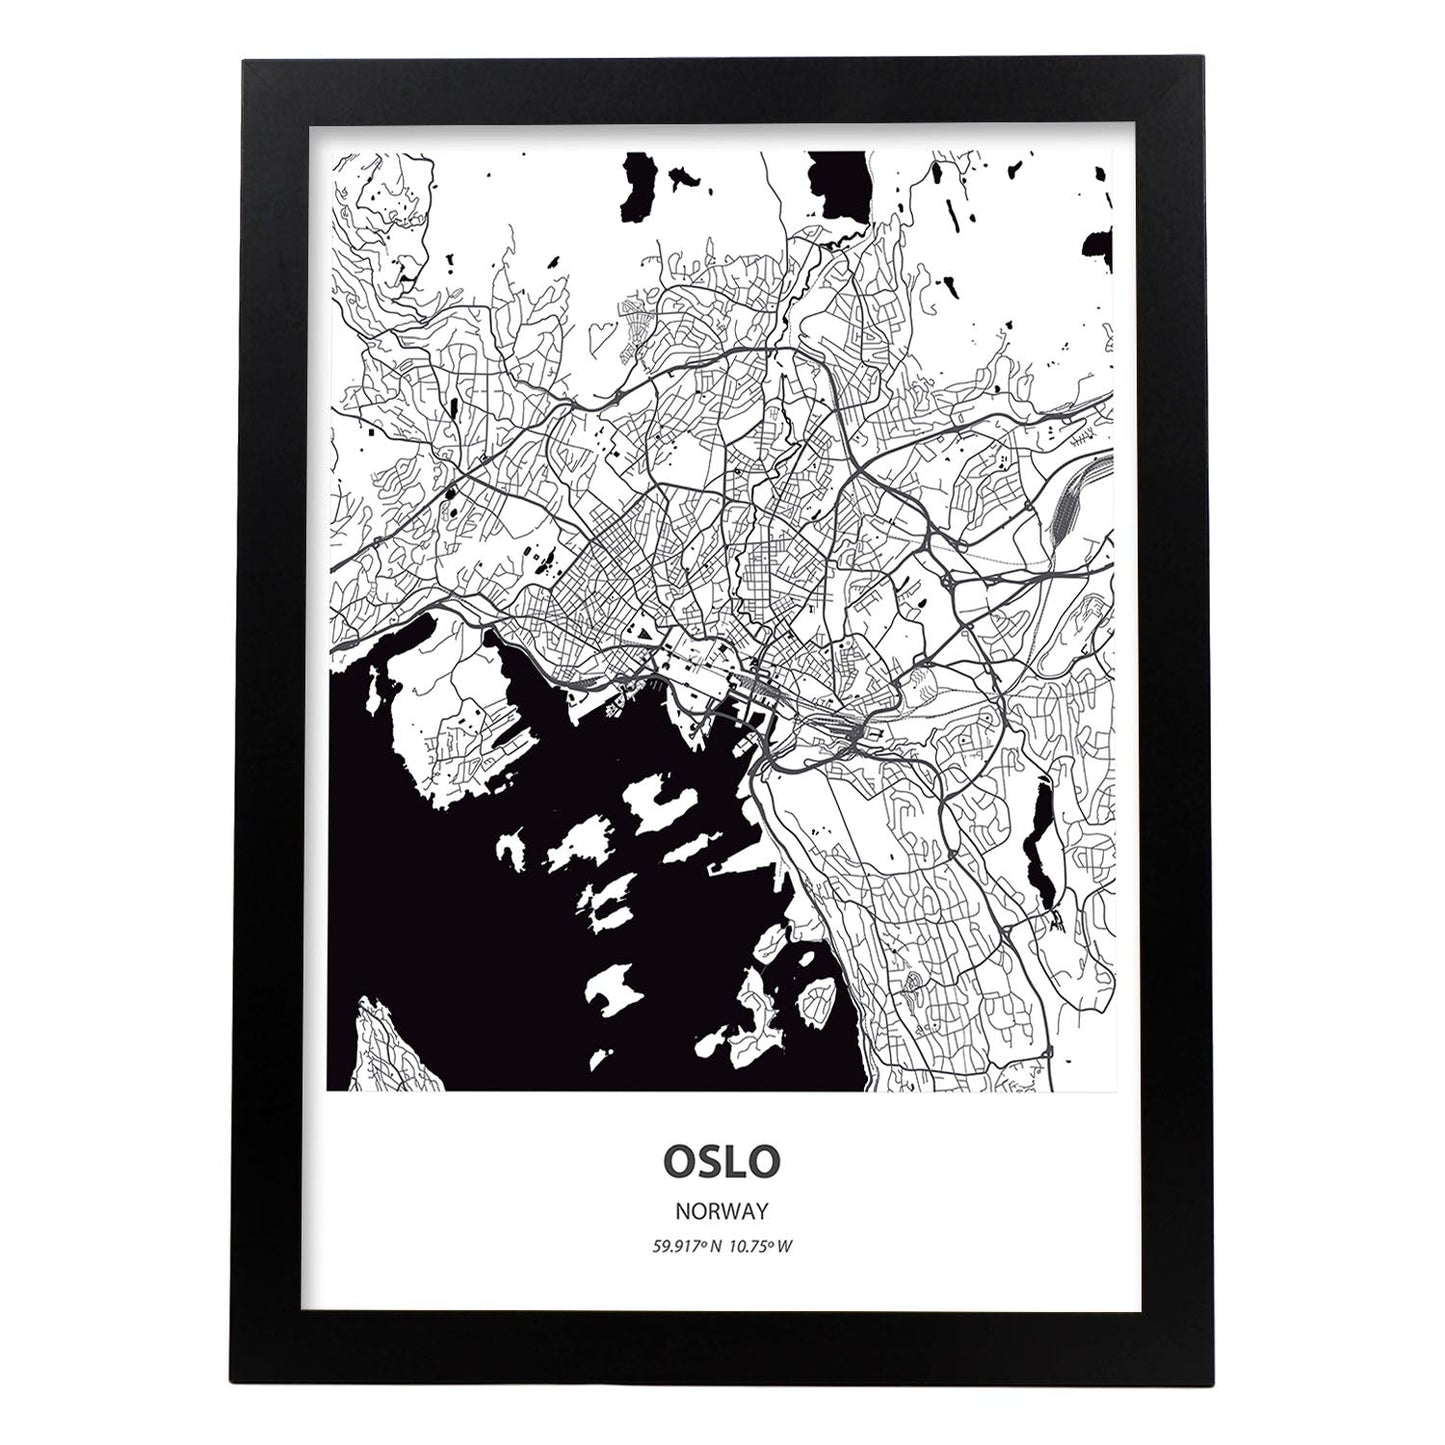 Poster con mapa de Oslo - Noruega. Láminas de ciudades del norte de Europa con mares y ríos en color negro.-Artwork-Nacnic-A3-Marco Negro-Nacnic Estudio SL